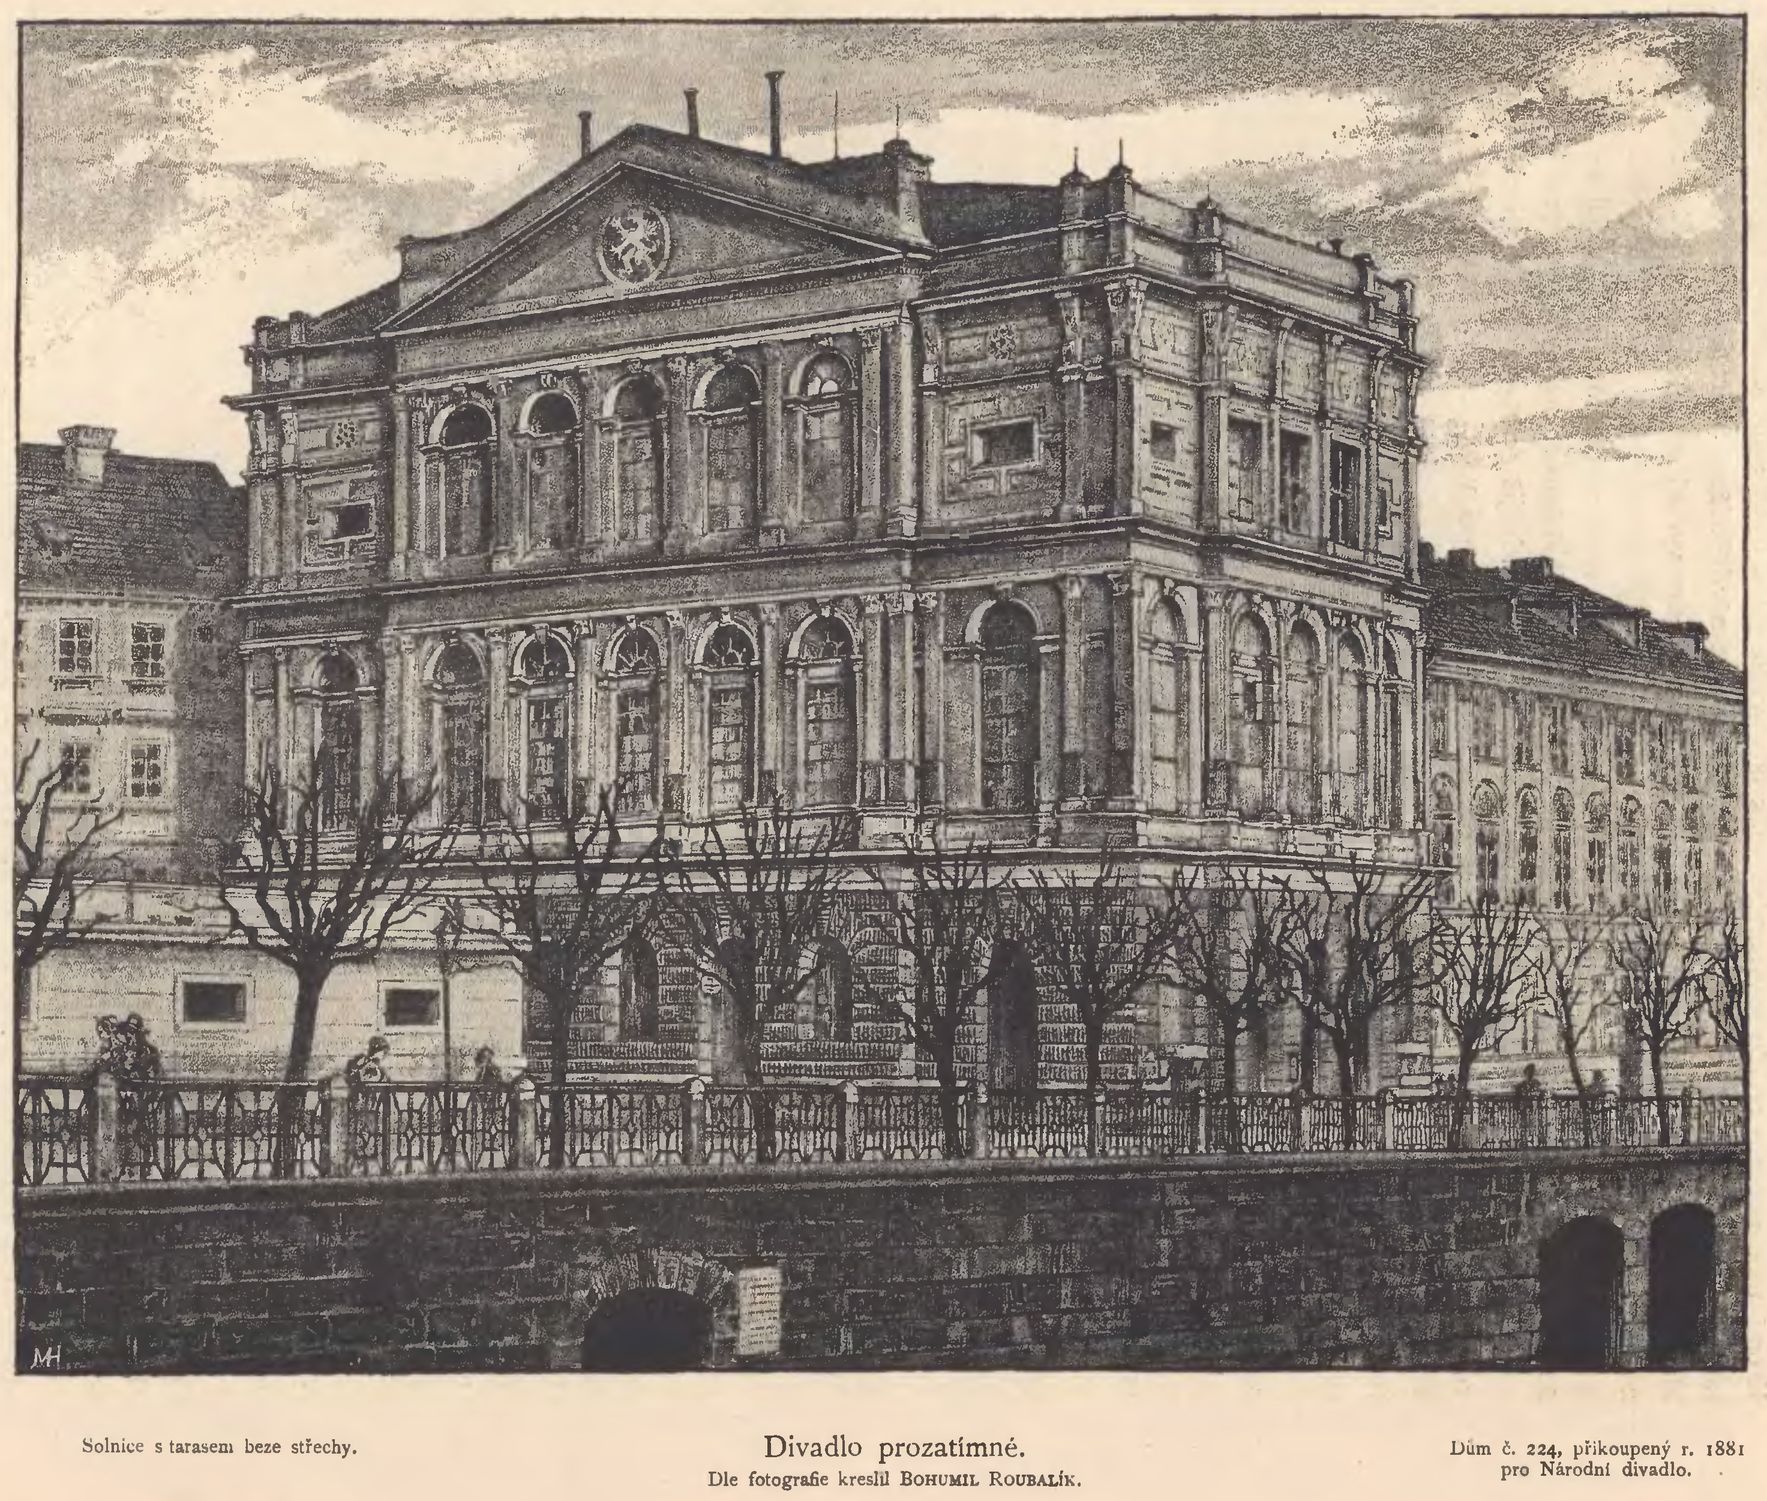 布拉格臨時劇院 (Prozatimní divadlo) 在 1862 年啟用，雖是臨時性質，卻因着上演捷克的戲劇與歌劇的數量慢慢增加，成為捷克復興浪潮的重要地。史密塔納由 1865 年起擔任劇院的指揮。